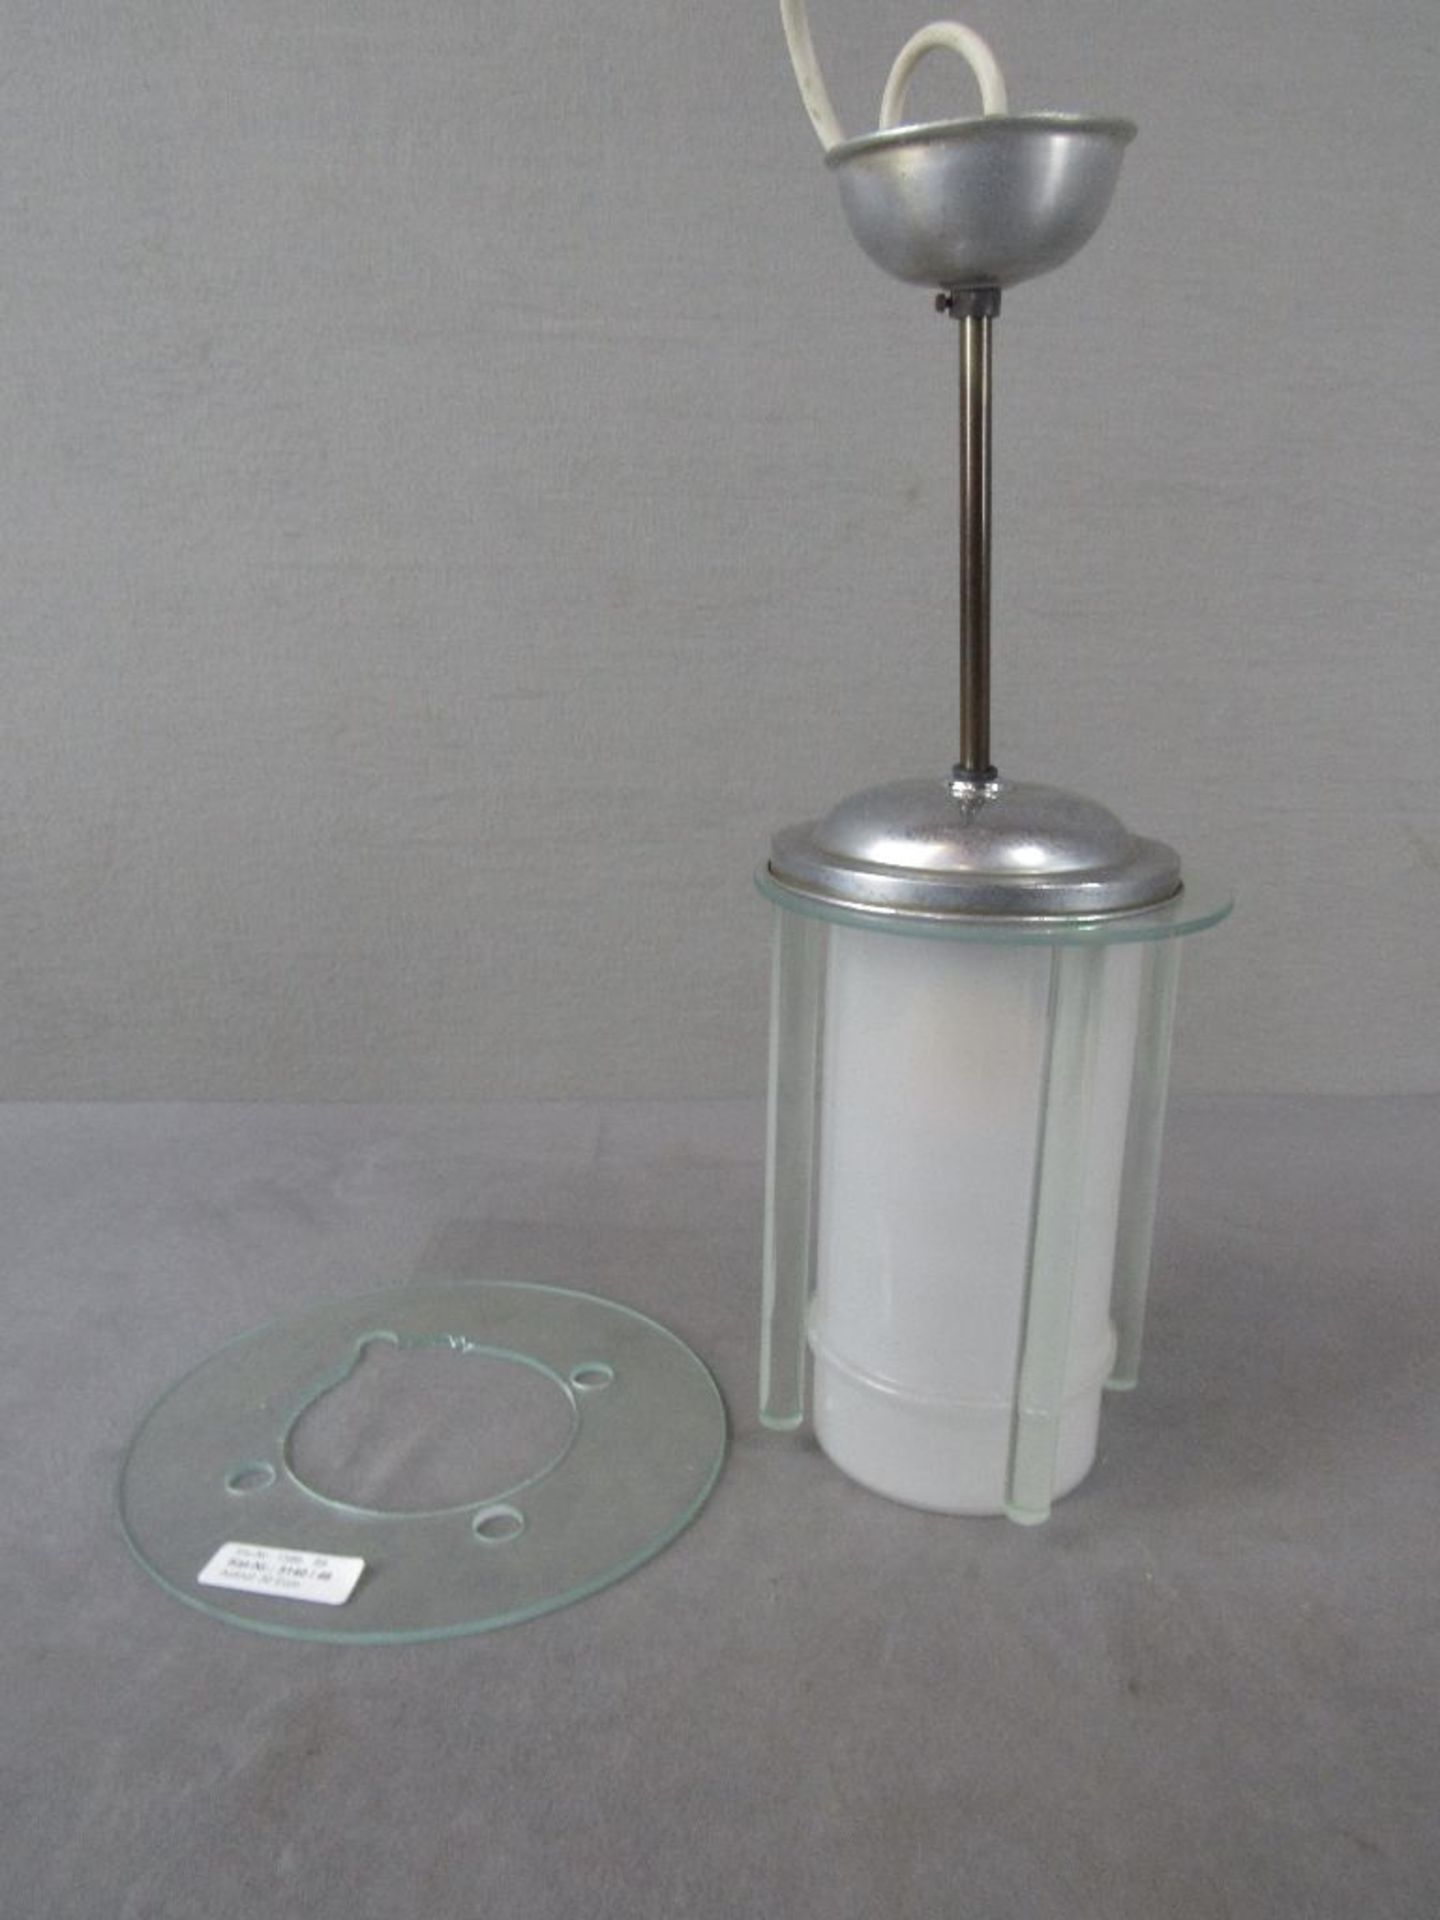 Deckenlampe in Art Deco neu elektrifiziert 48cm hoch